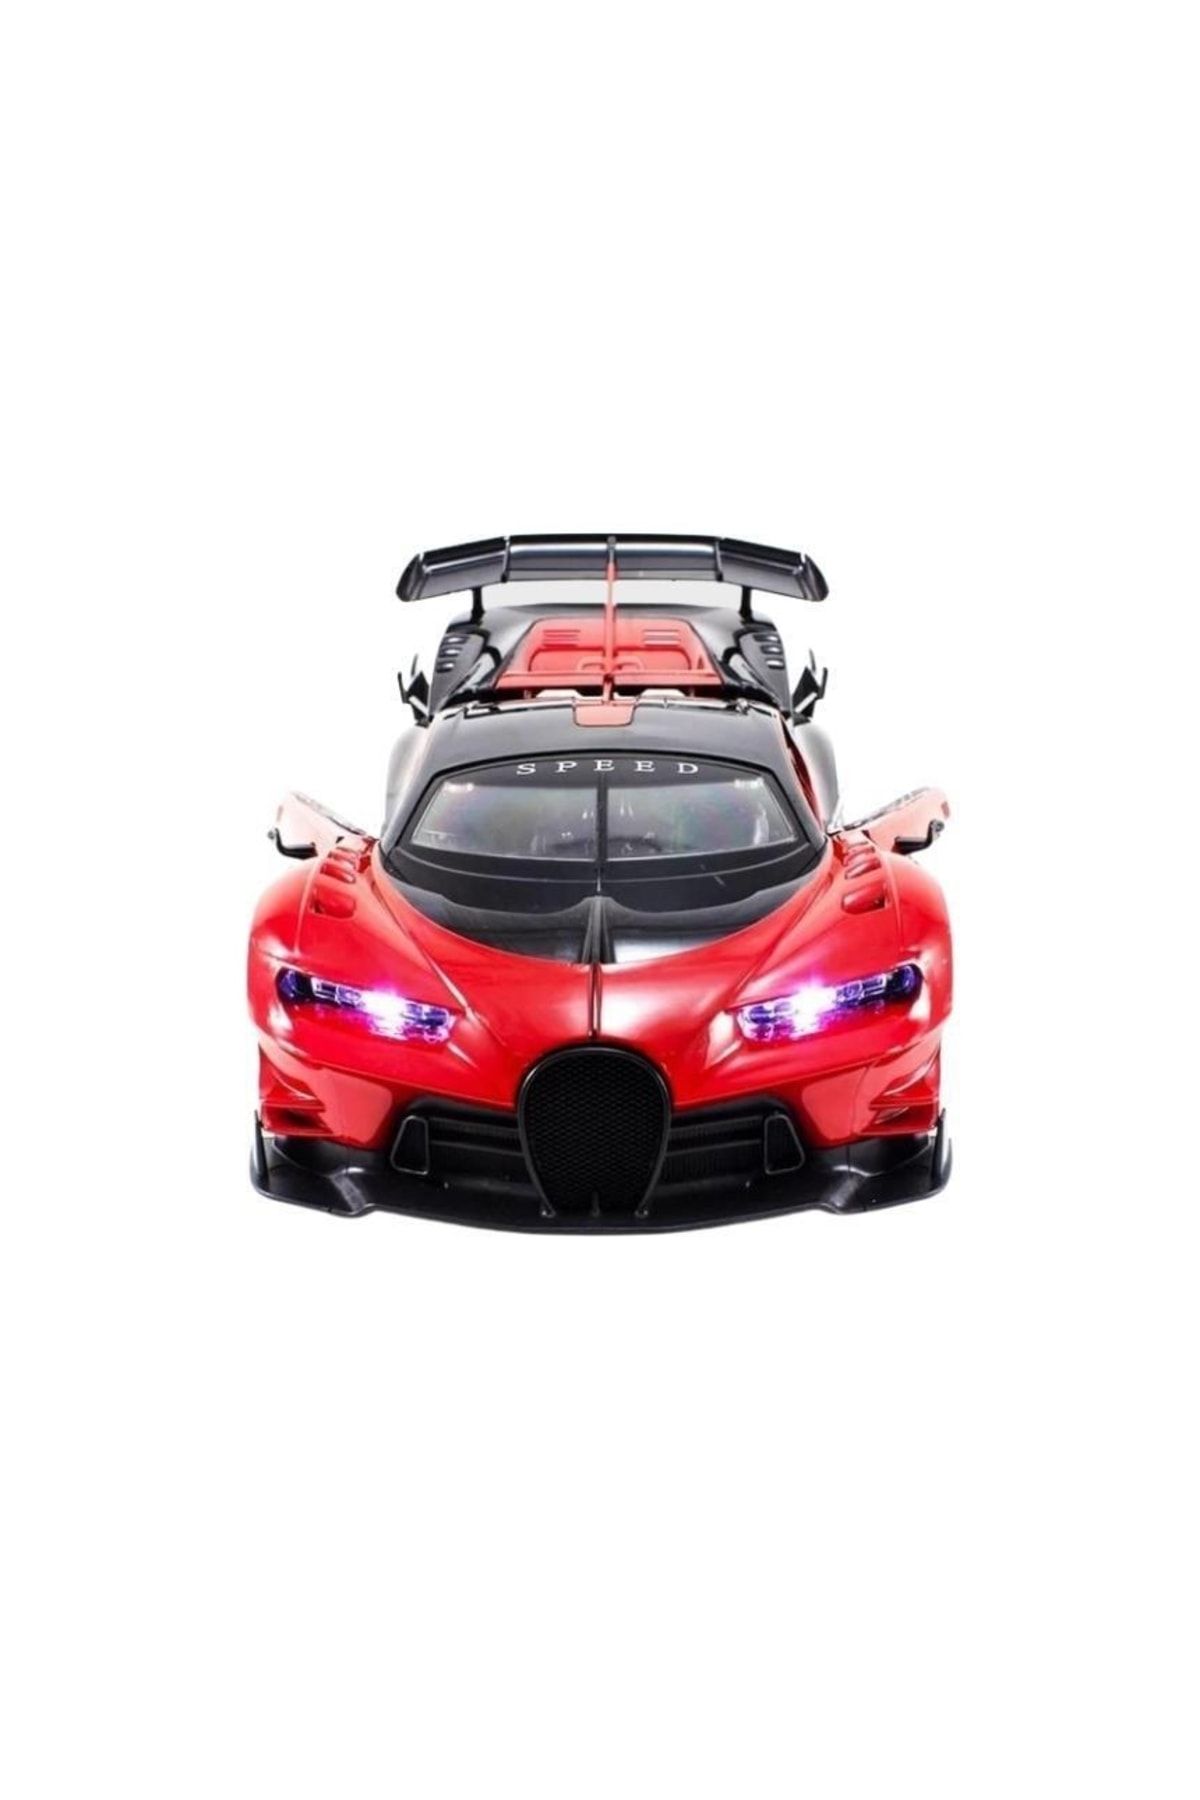 Karsan Oyuncak Bugatti Chiron Şarjlı 1:12 Uzaktan Kumandalı Araba Kar3688-k36a